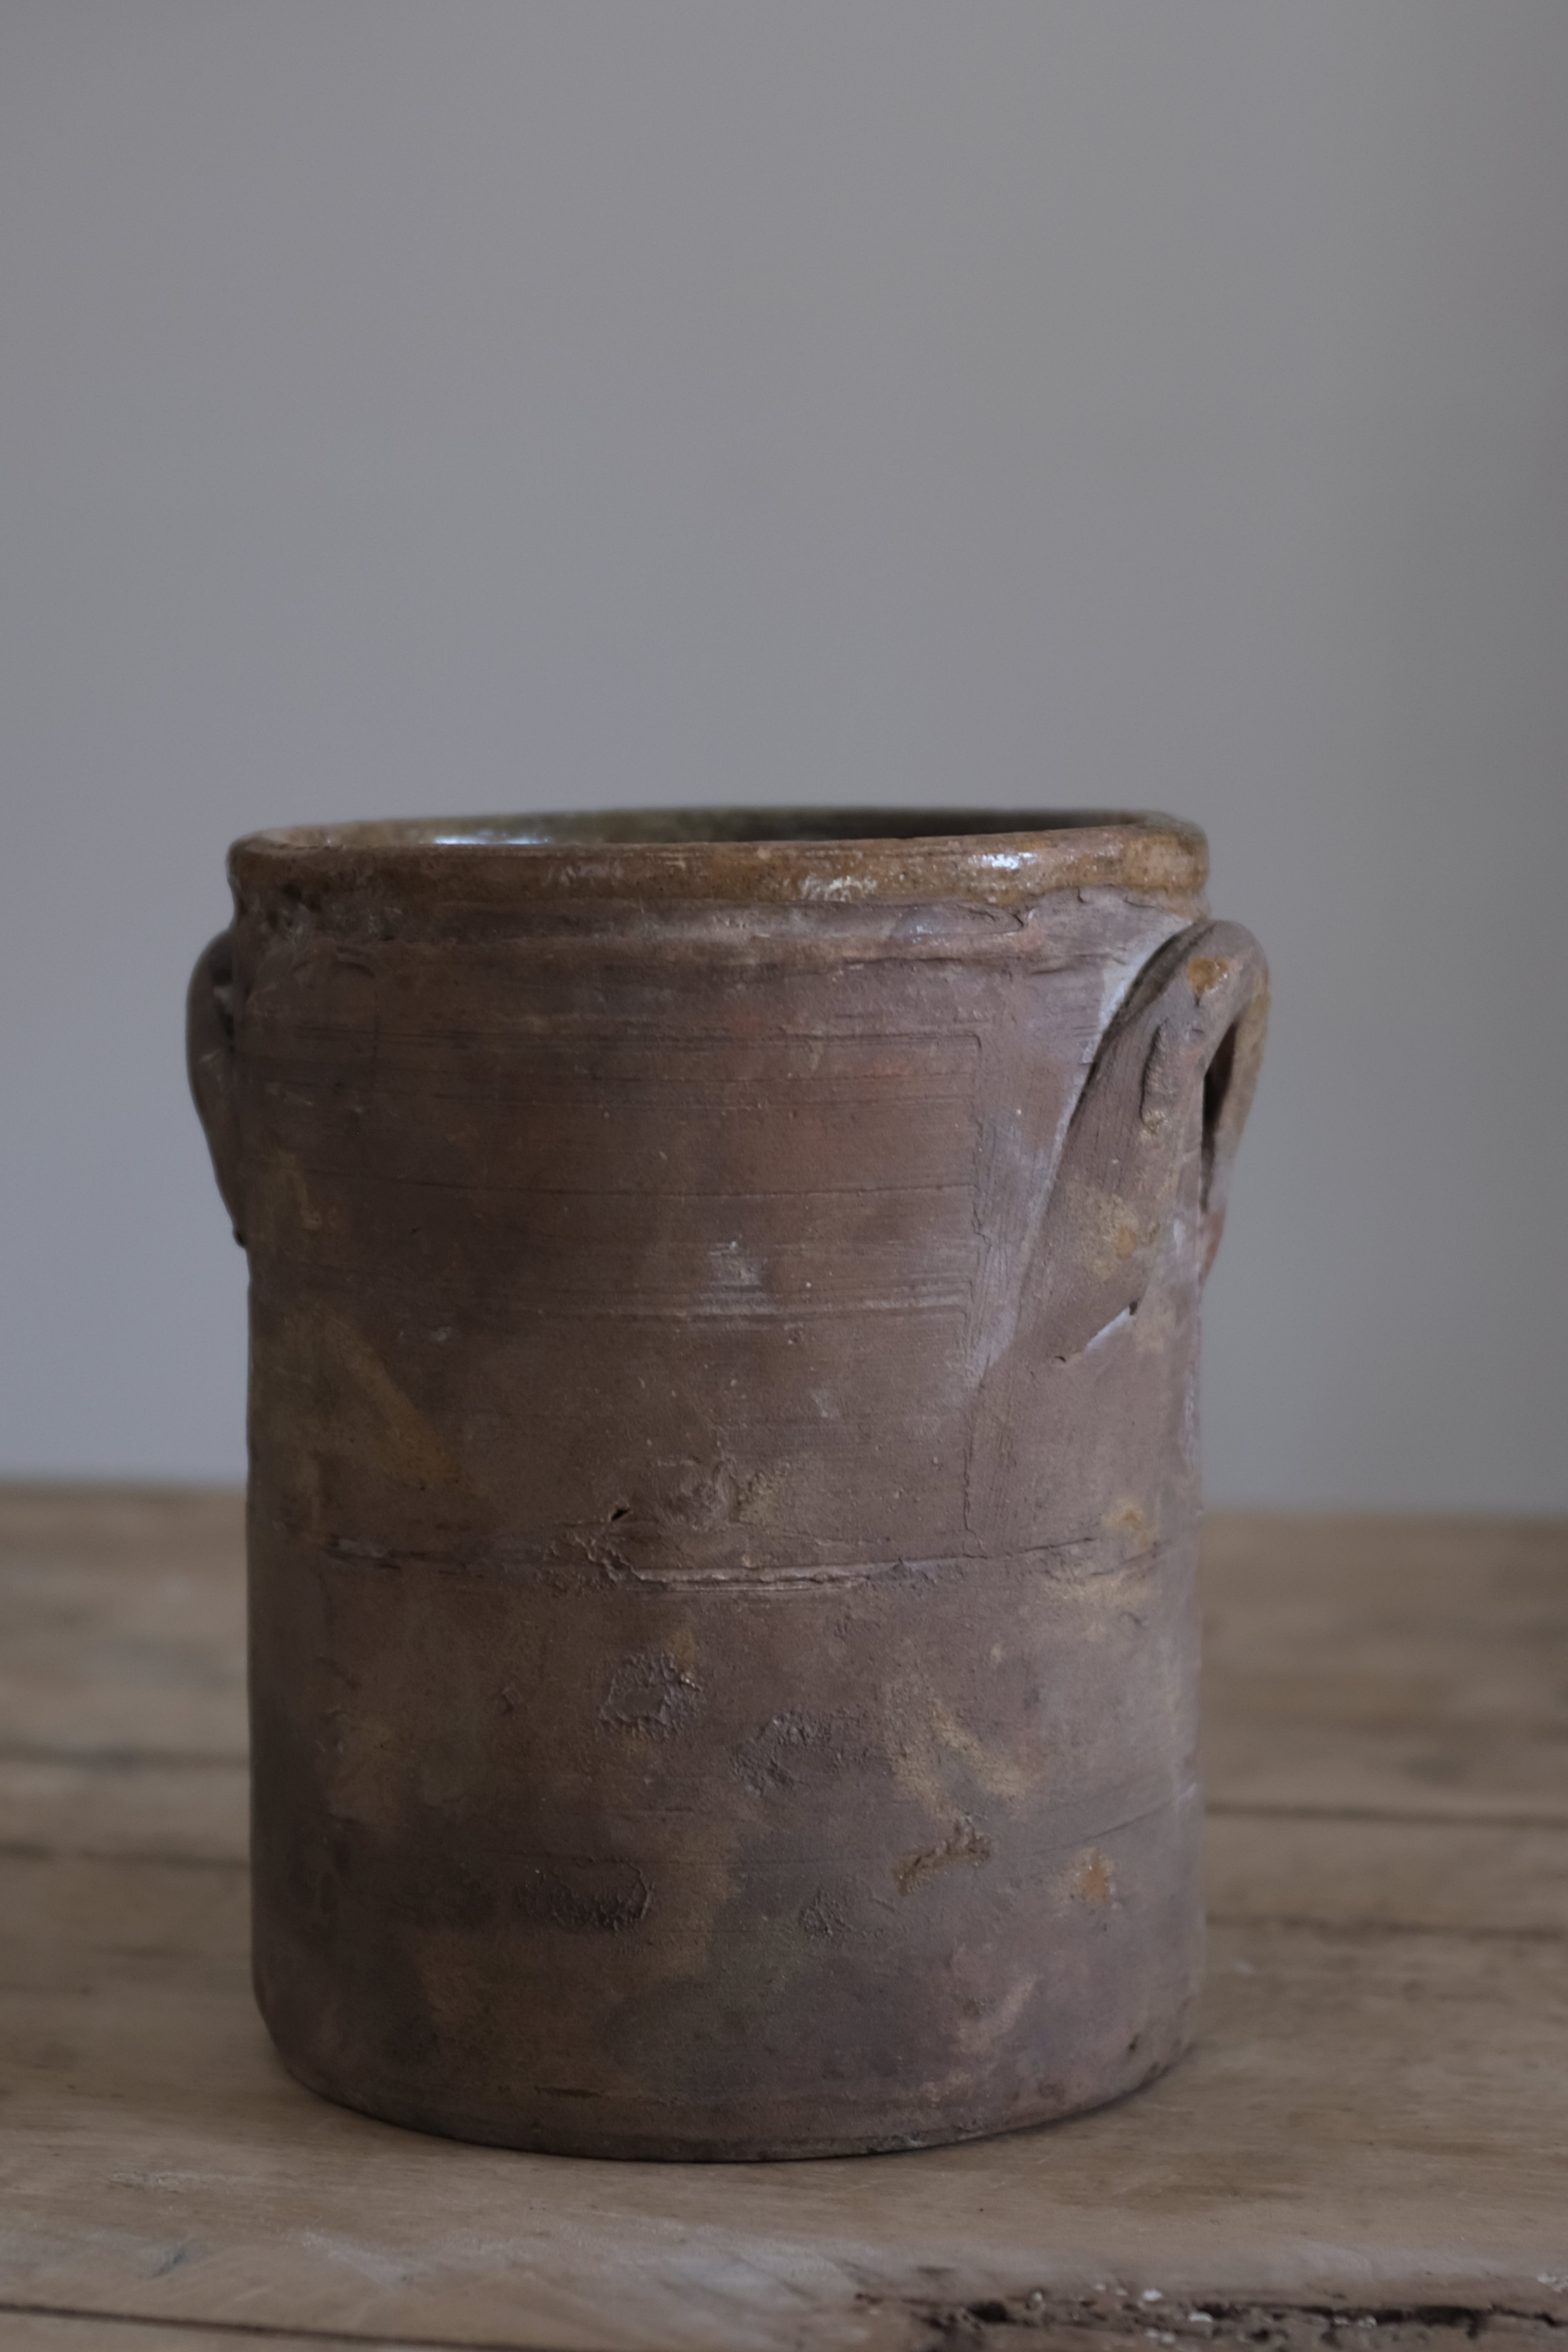  19世紀 イタリア カラブリア 食料保存壺 AT-23204, Antique,- ambiant